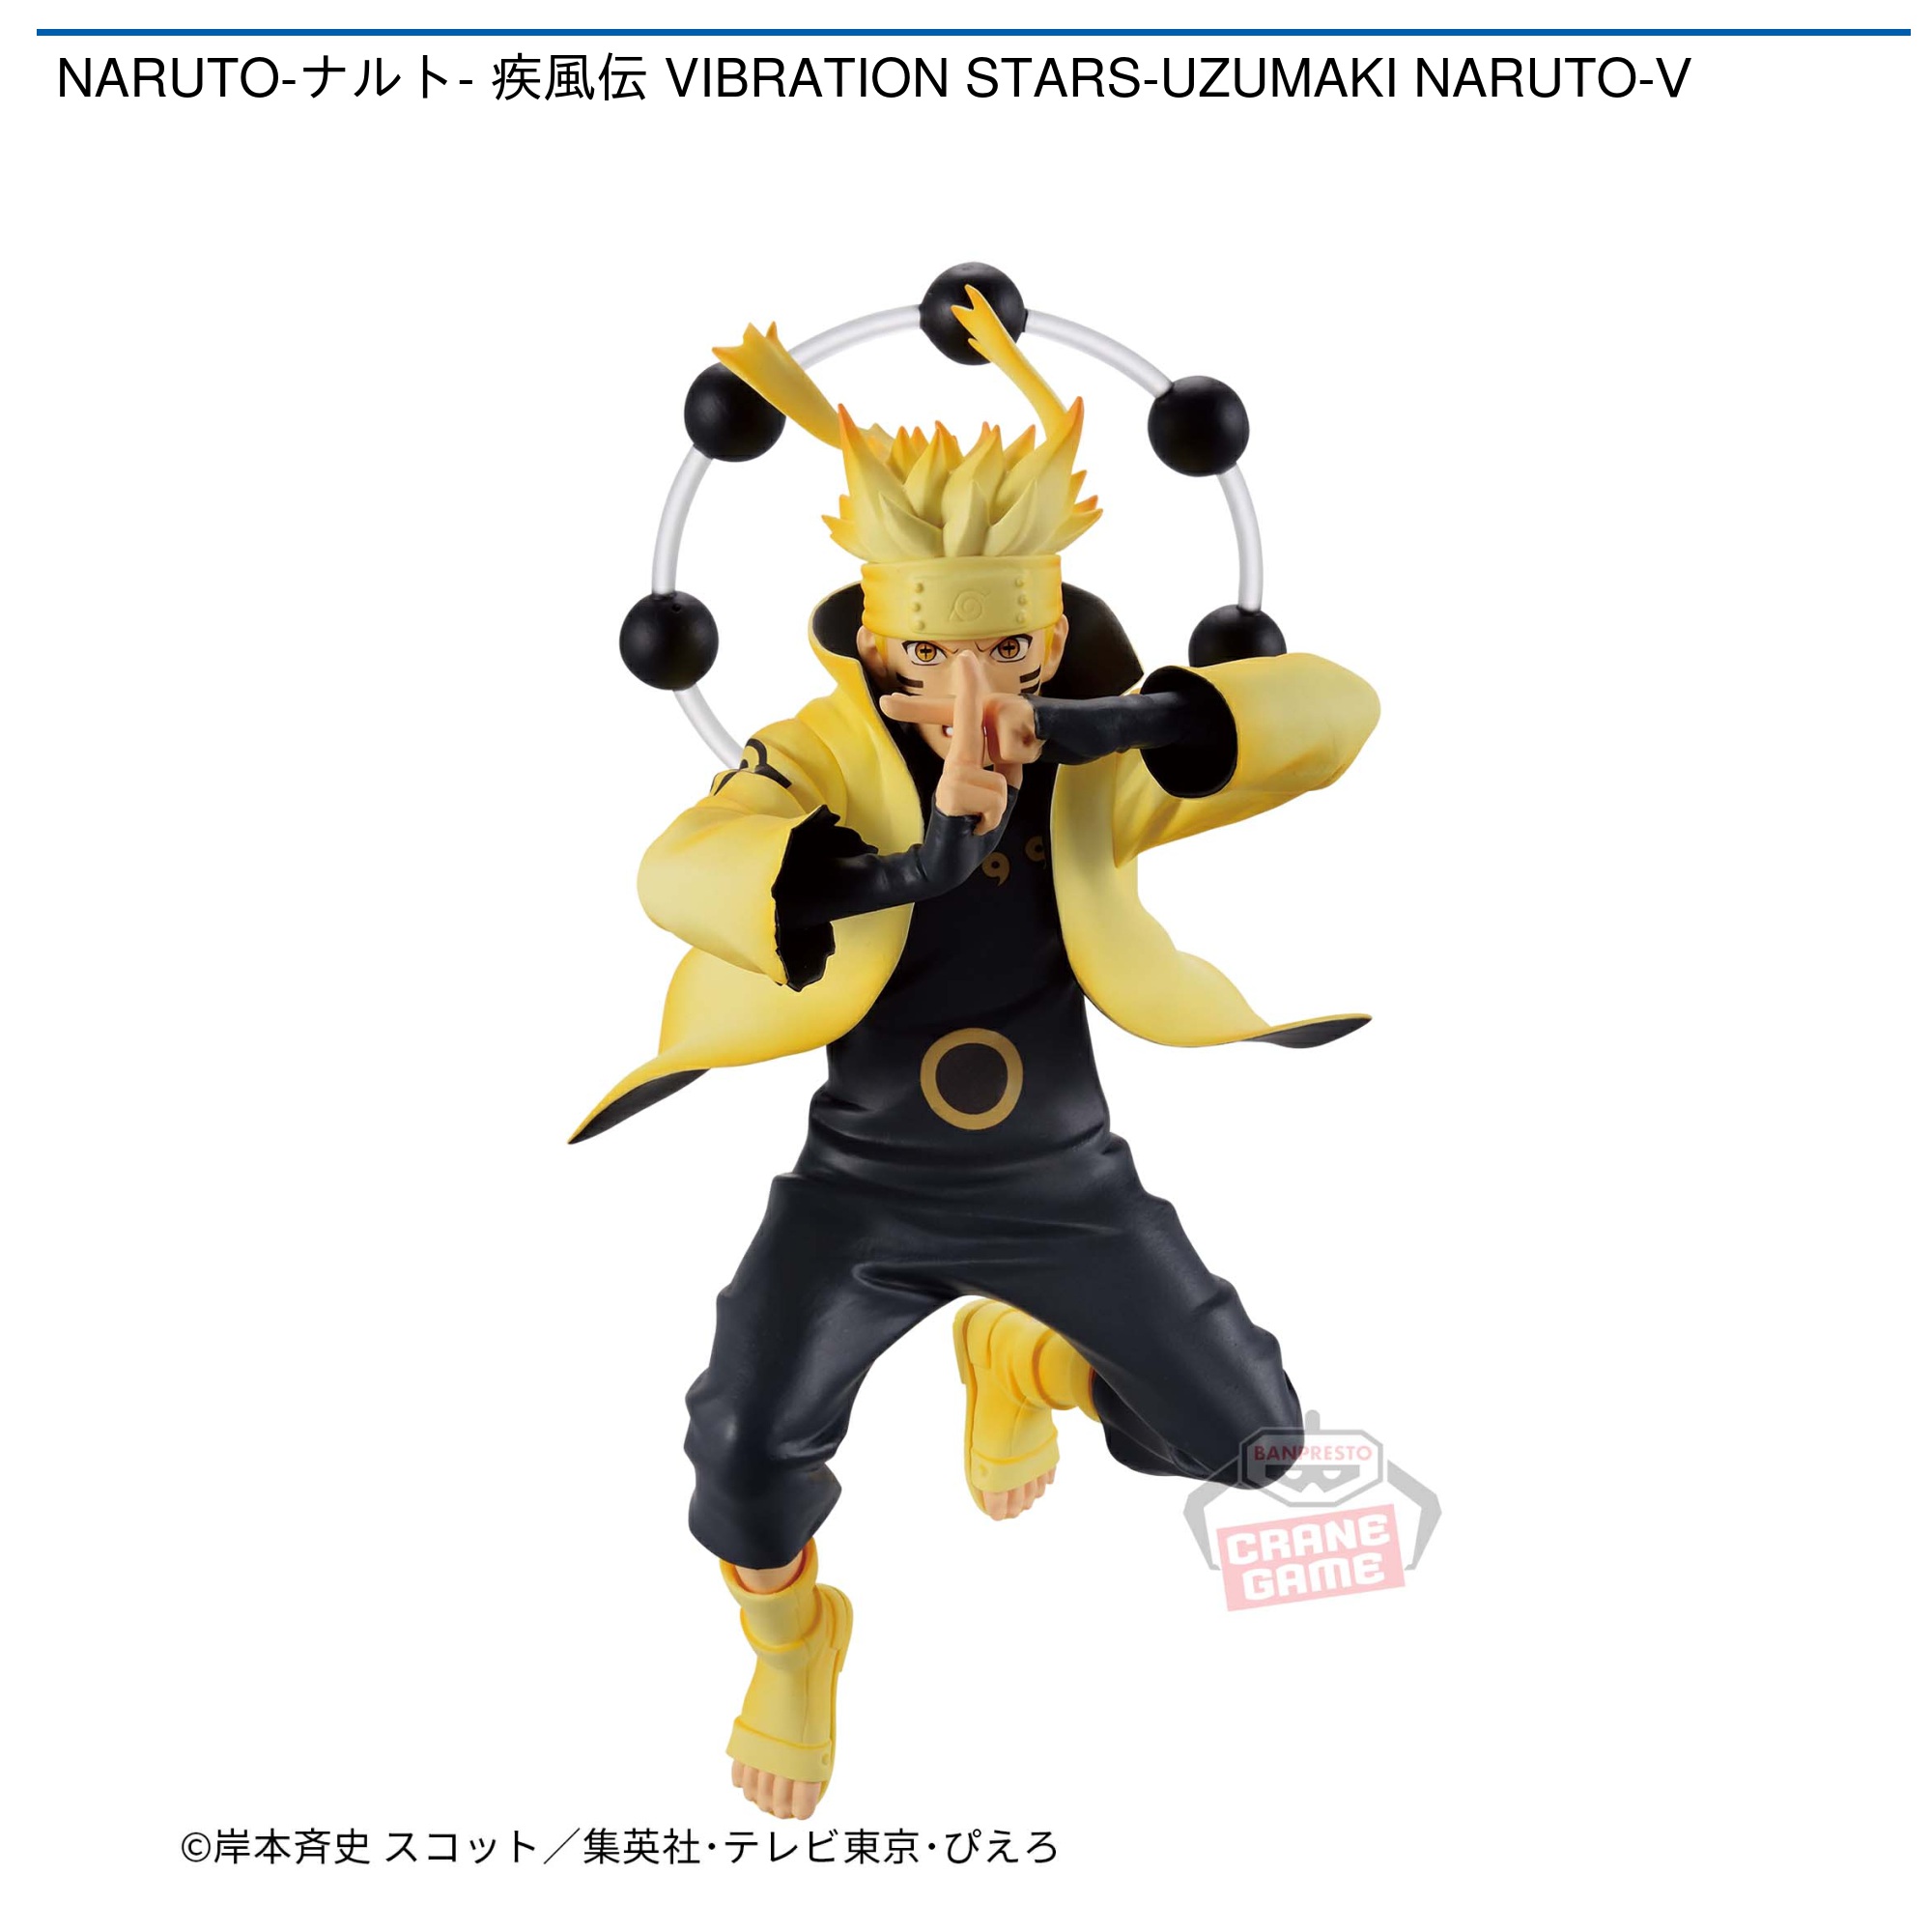 NARUTO-ナルト- 疾風伝 VIBRATION STARS-NARUTO-Ⅴぬーどるストッパー